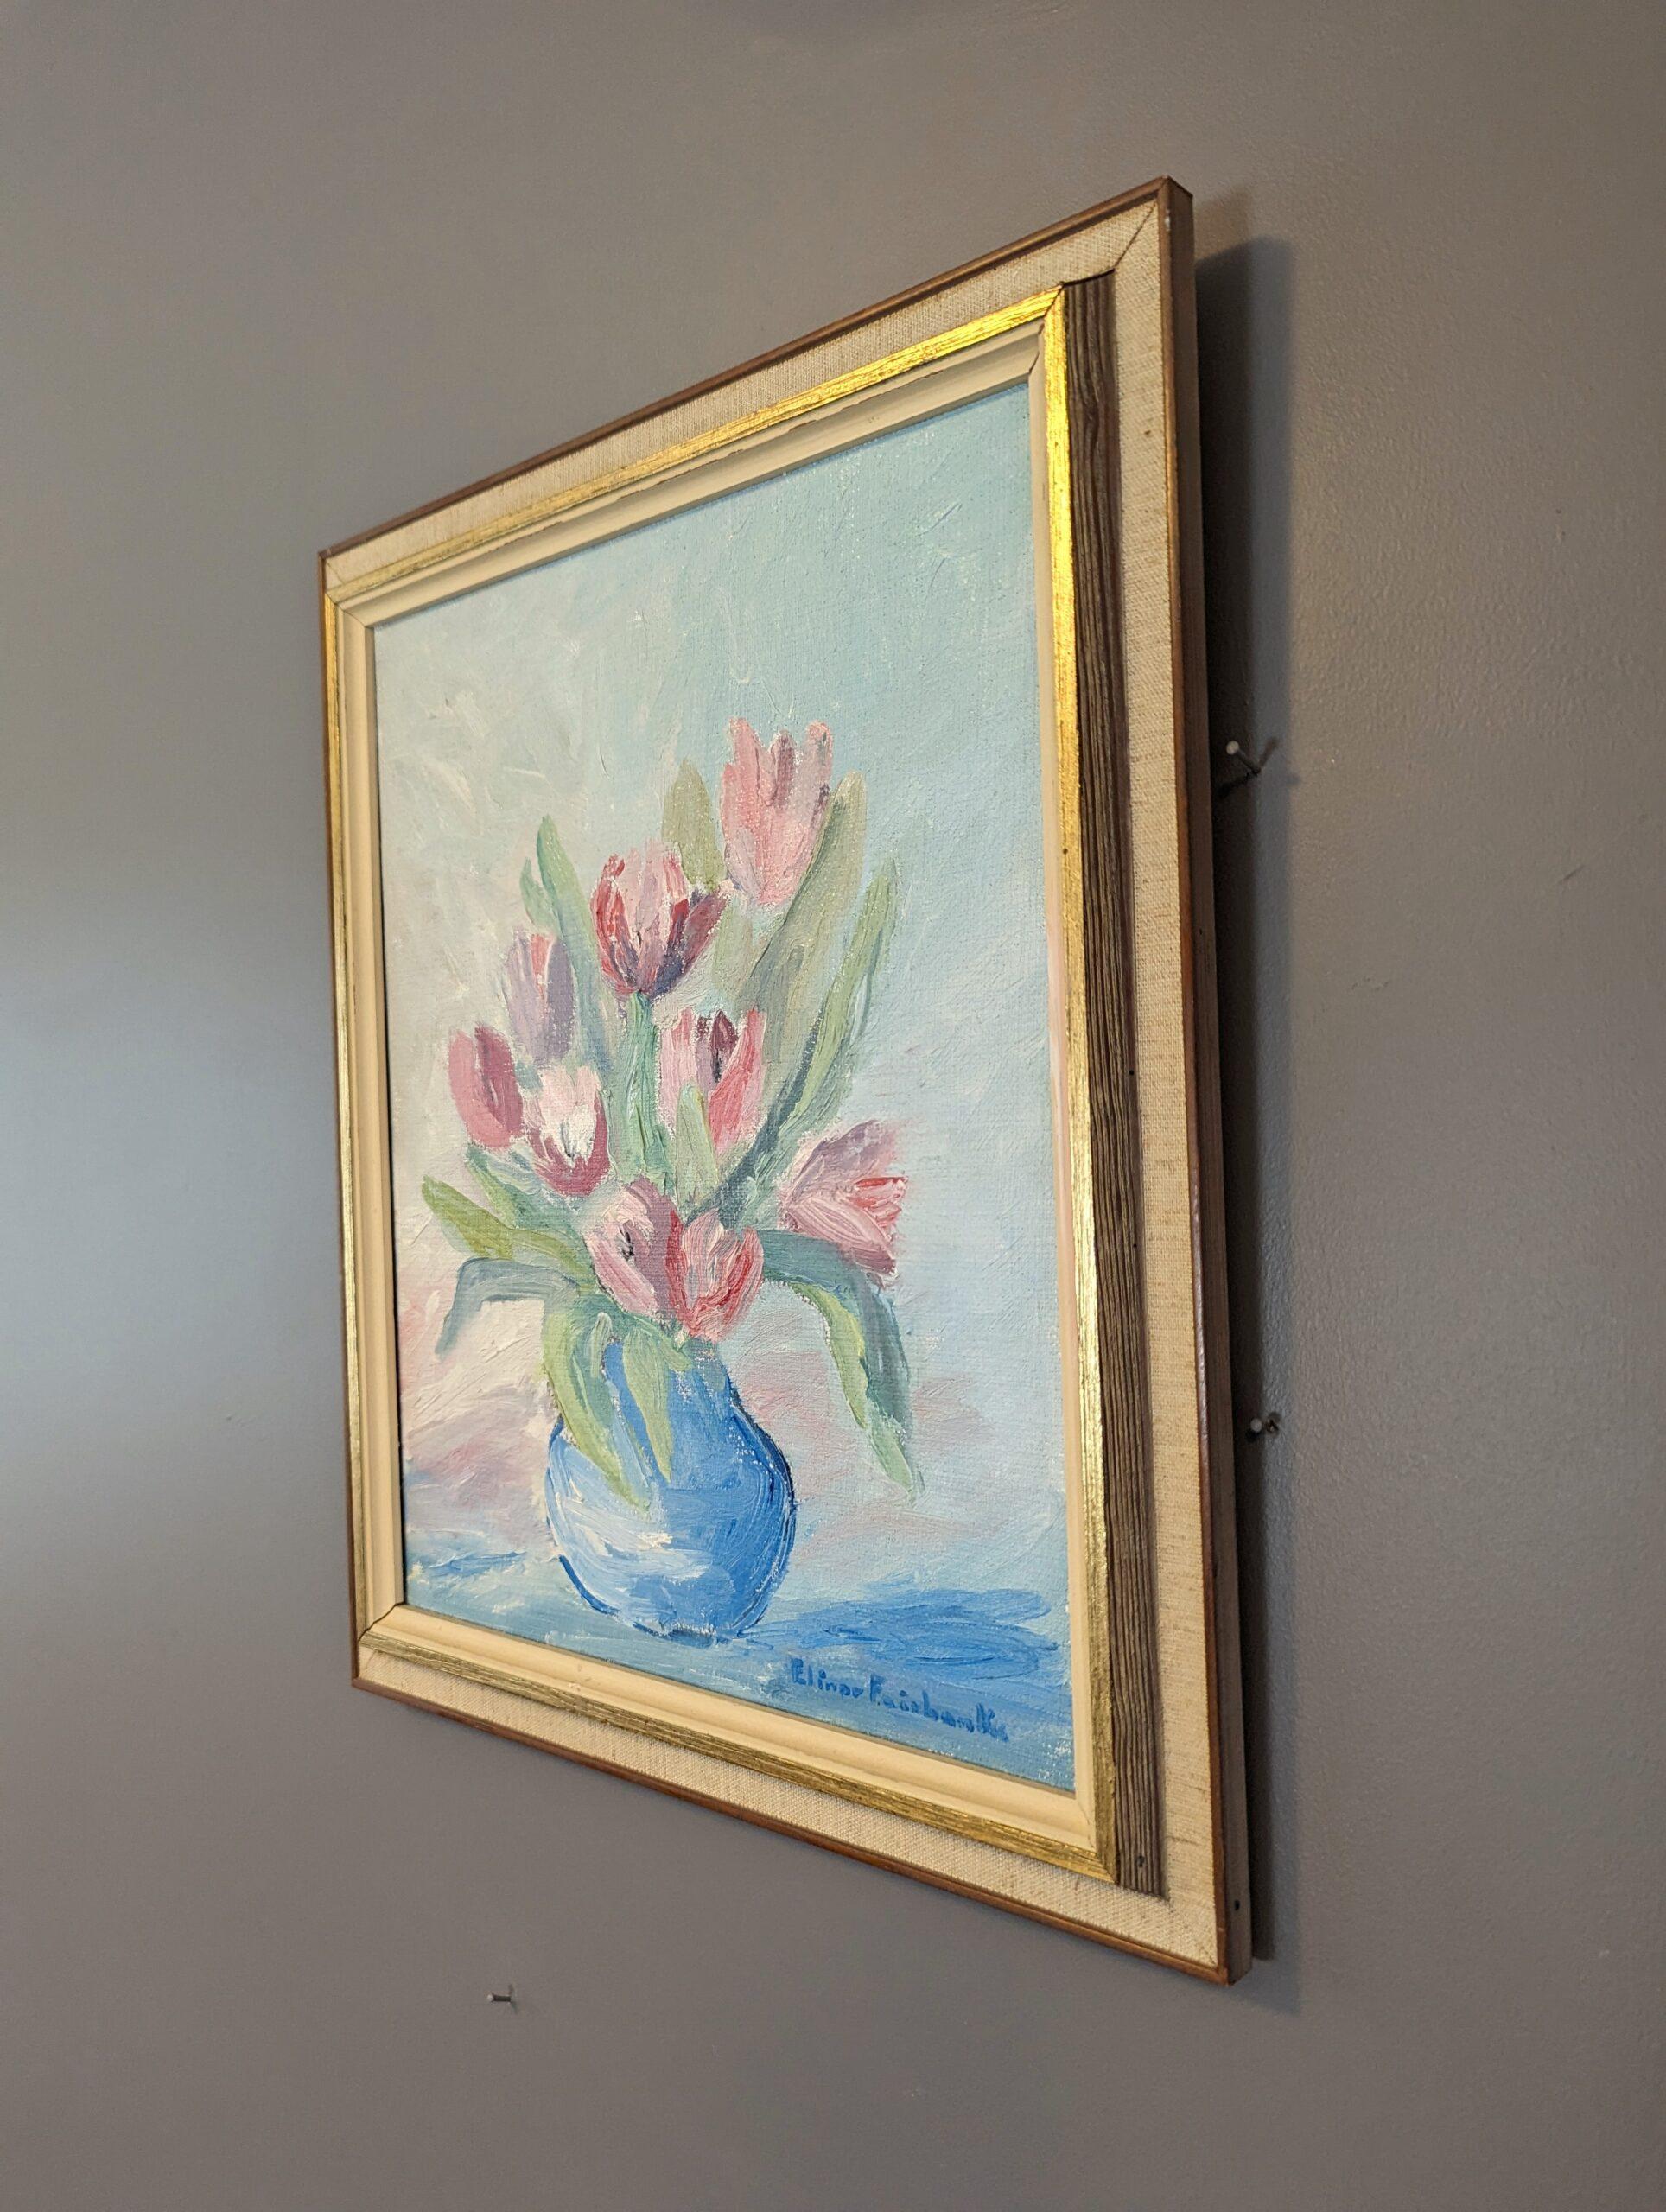 TULIPES EN PASTEL
Taille : 38 x 32 cm (cadre compris)
Huile sur toile

Très élégante composition florale à l'huile de style moderniste du milieu du siècle, peinte sur toile.

Cette œuvre florale présente des tulipes rose pâle dans un vase bleu,